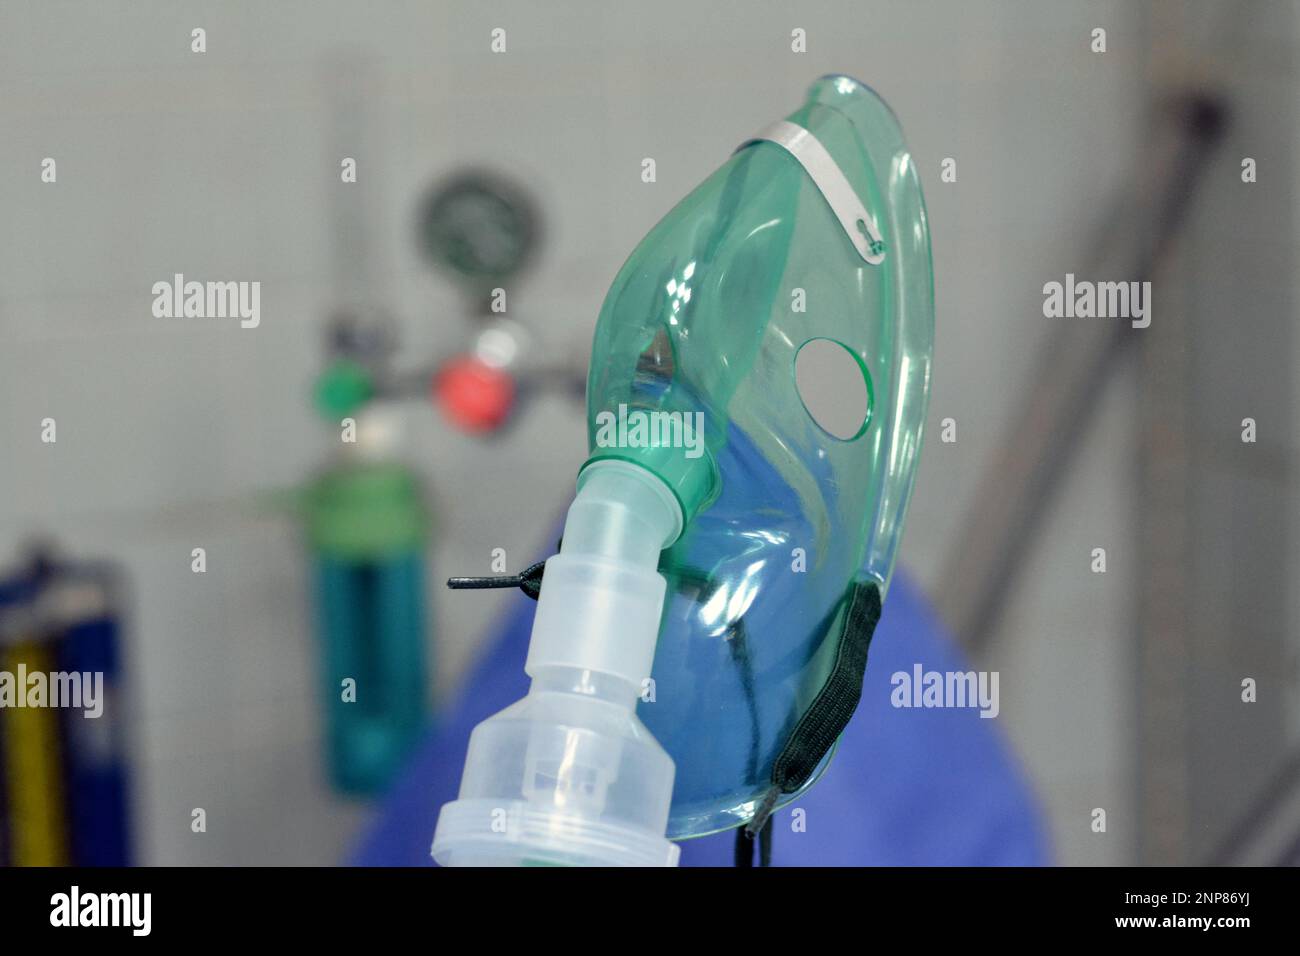 Un nebulizzatore o maschera nebulizzatore che è collegato a una bombola di ossigeno o a un dispositivo di somministrazione del farmaco utilizzato per somministrare un farmaco sotto forma di inalazione di nebbia Foto Stock